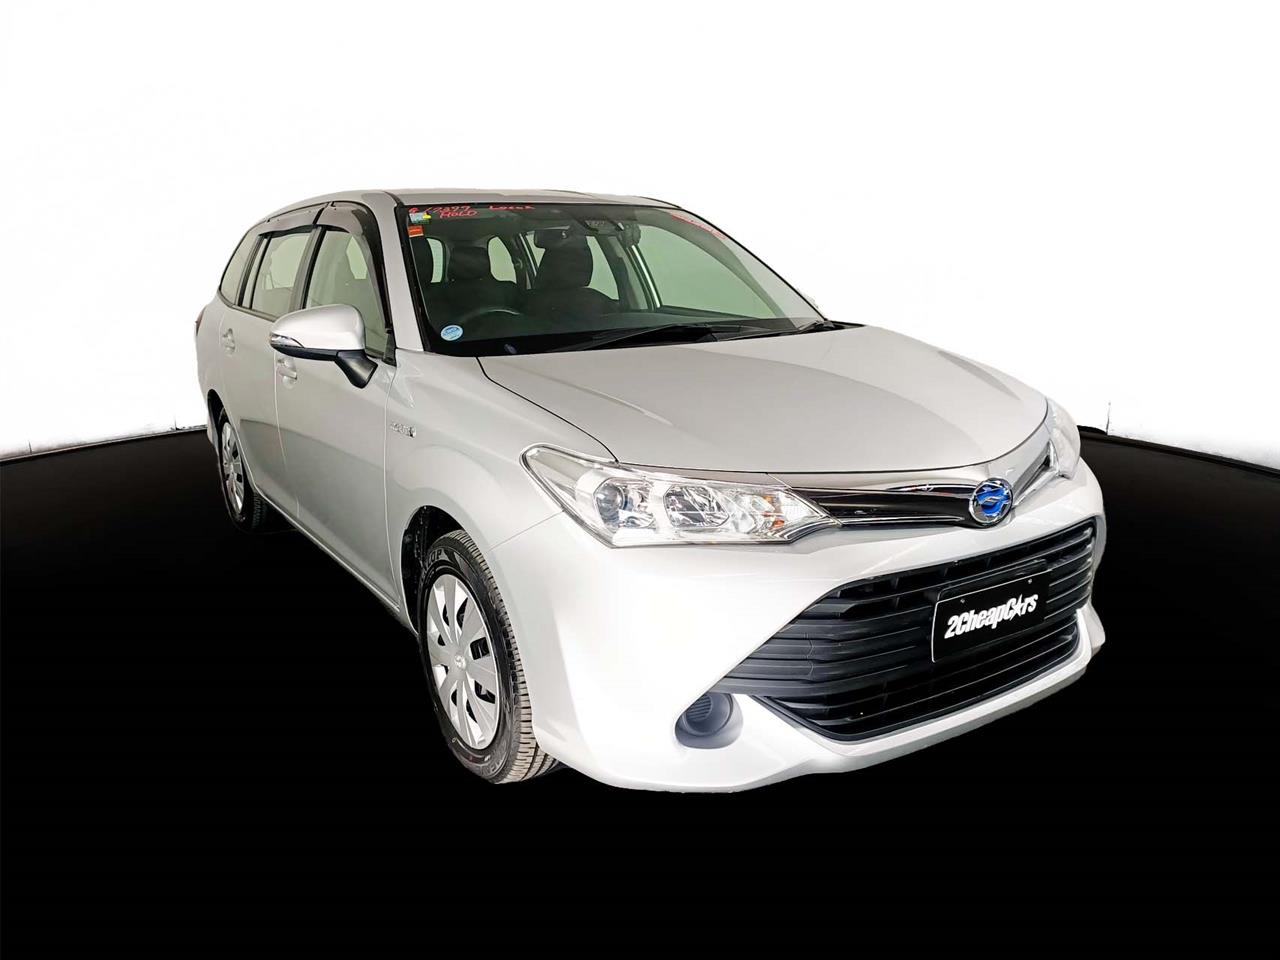 2015 Toyota Corolla Fielder Hybrid New Shape 